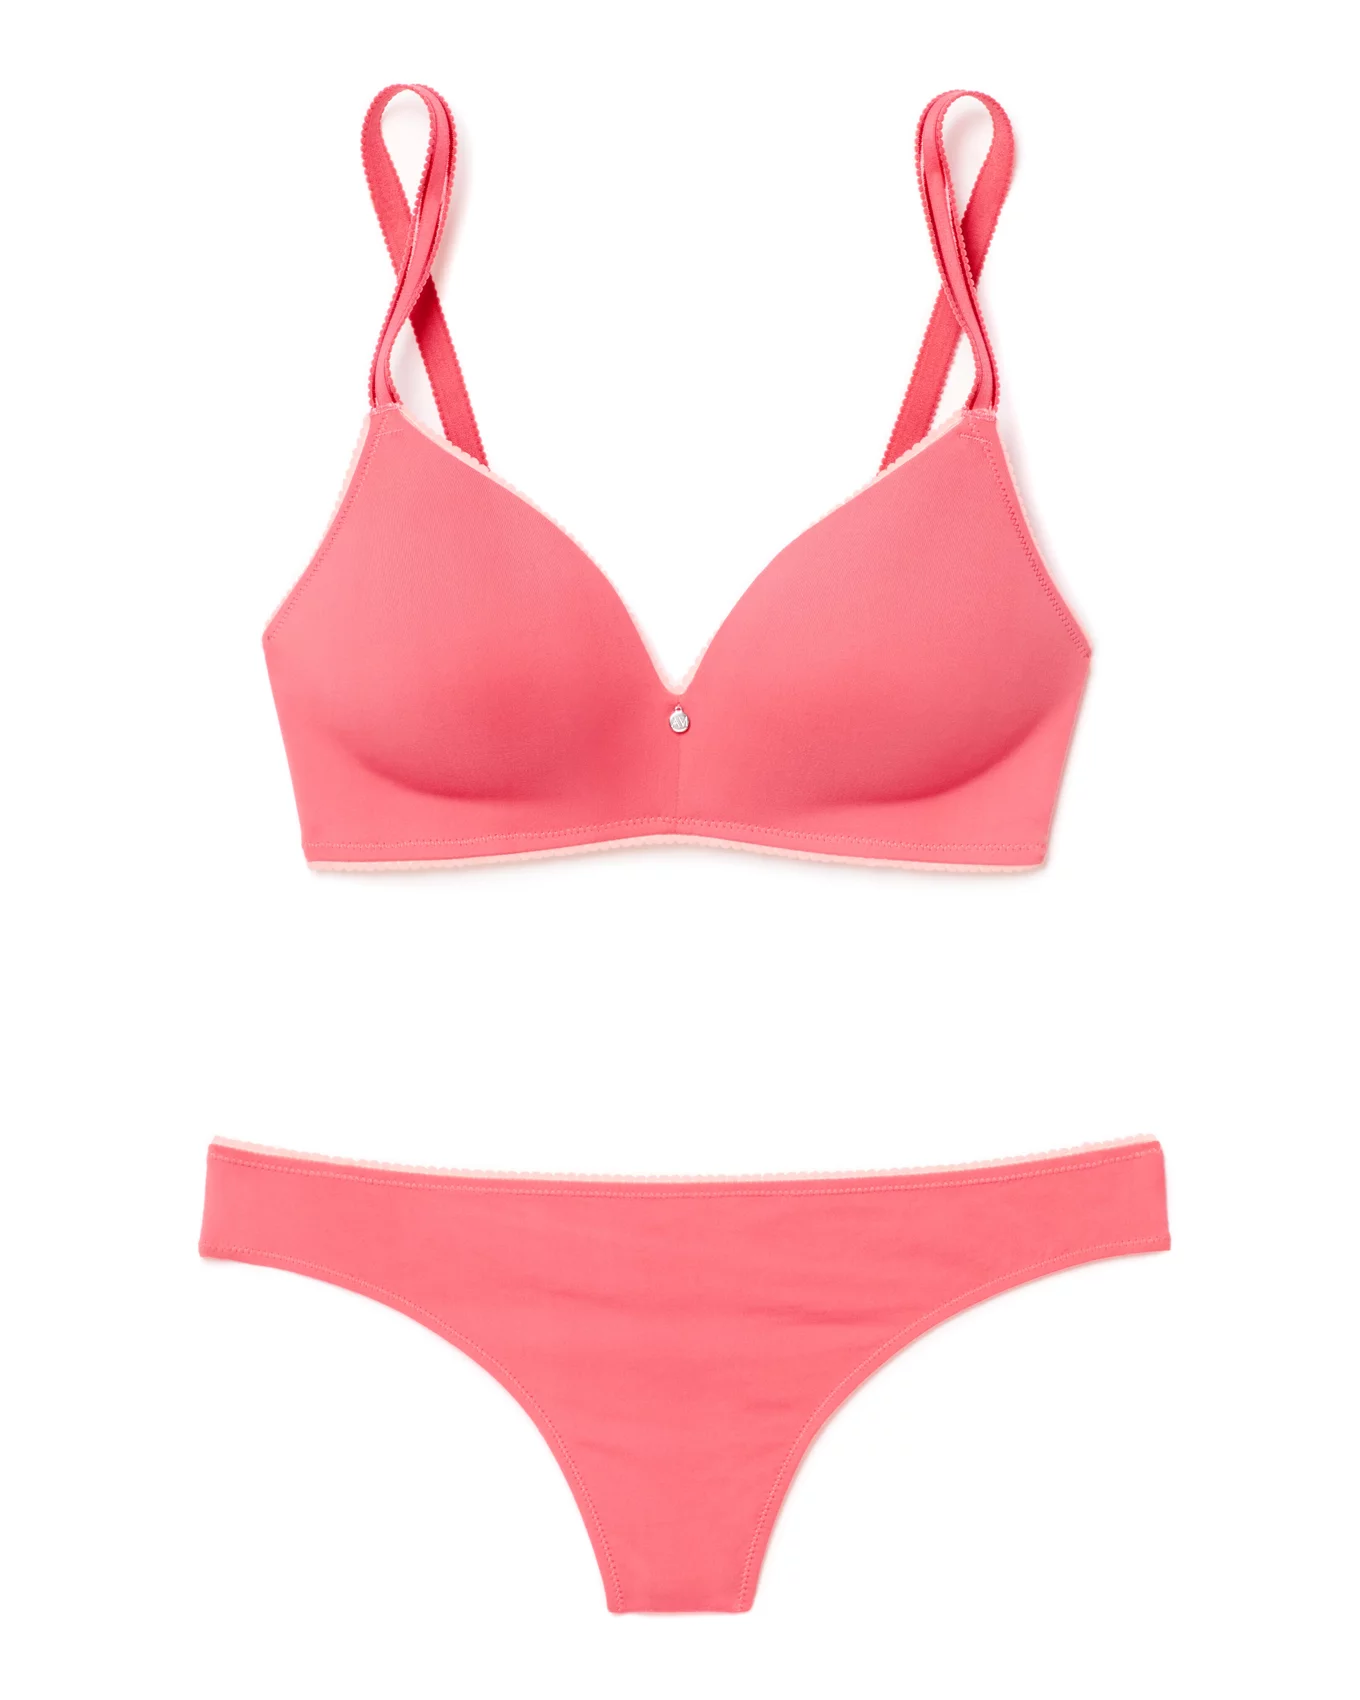 3 Sz 32A Victoria's Secret/PINK bras, bundle  Pink bra, Cute bras, Victoria  secret pink bras